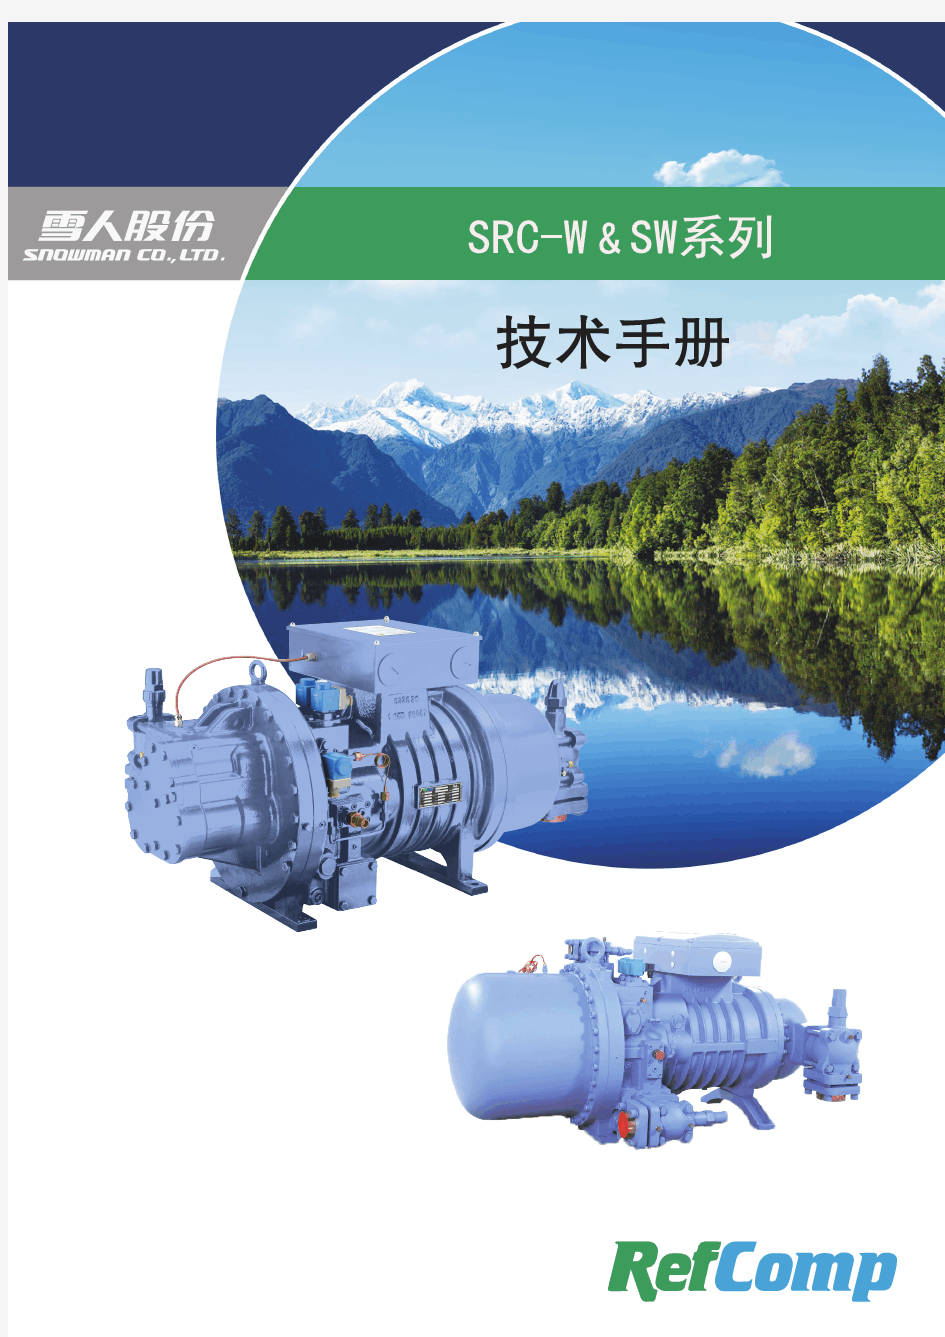 SW低温螺杆压缩机技术手册(中文)20151029